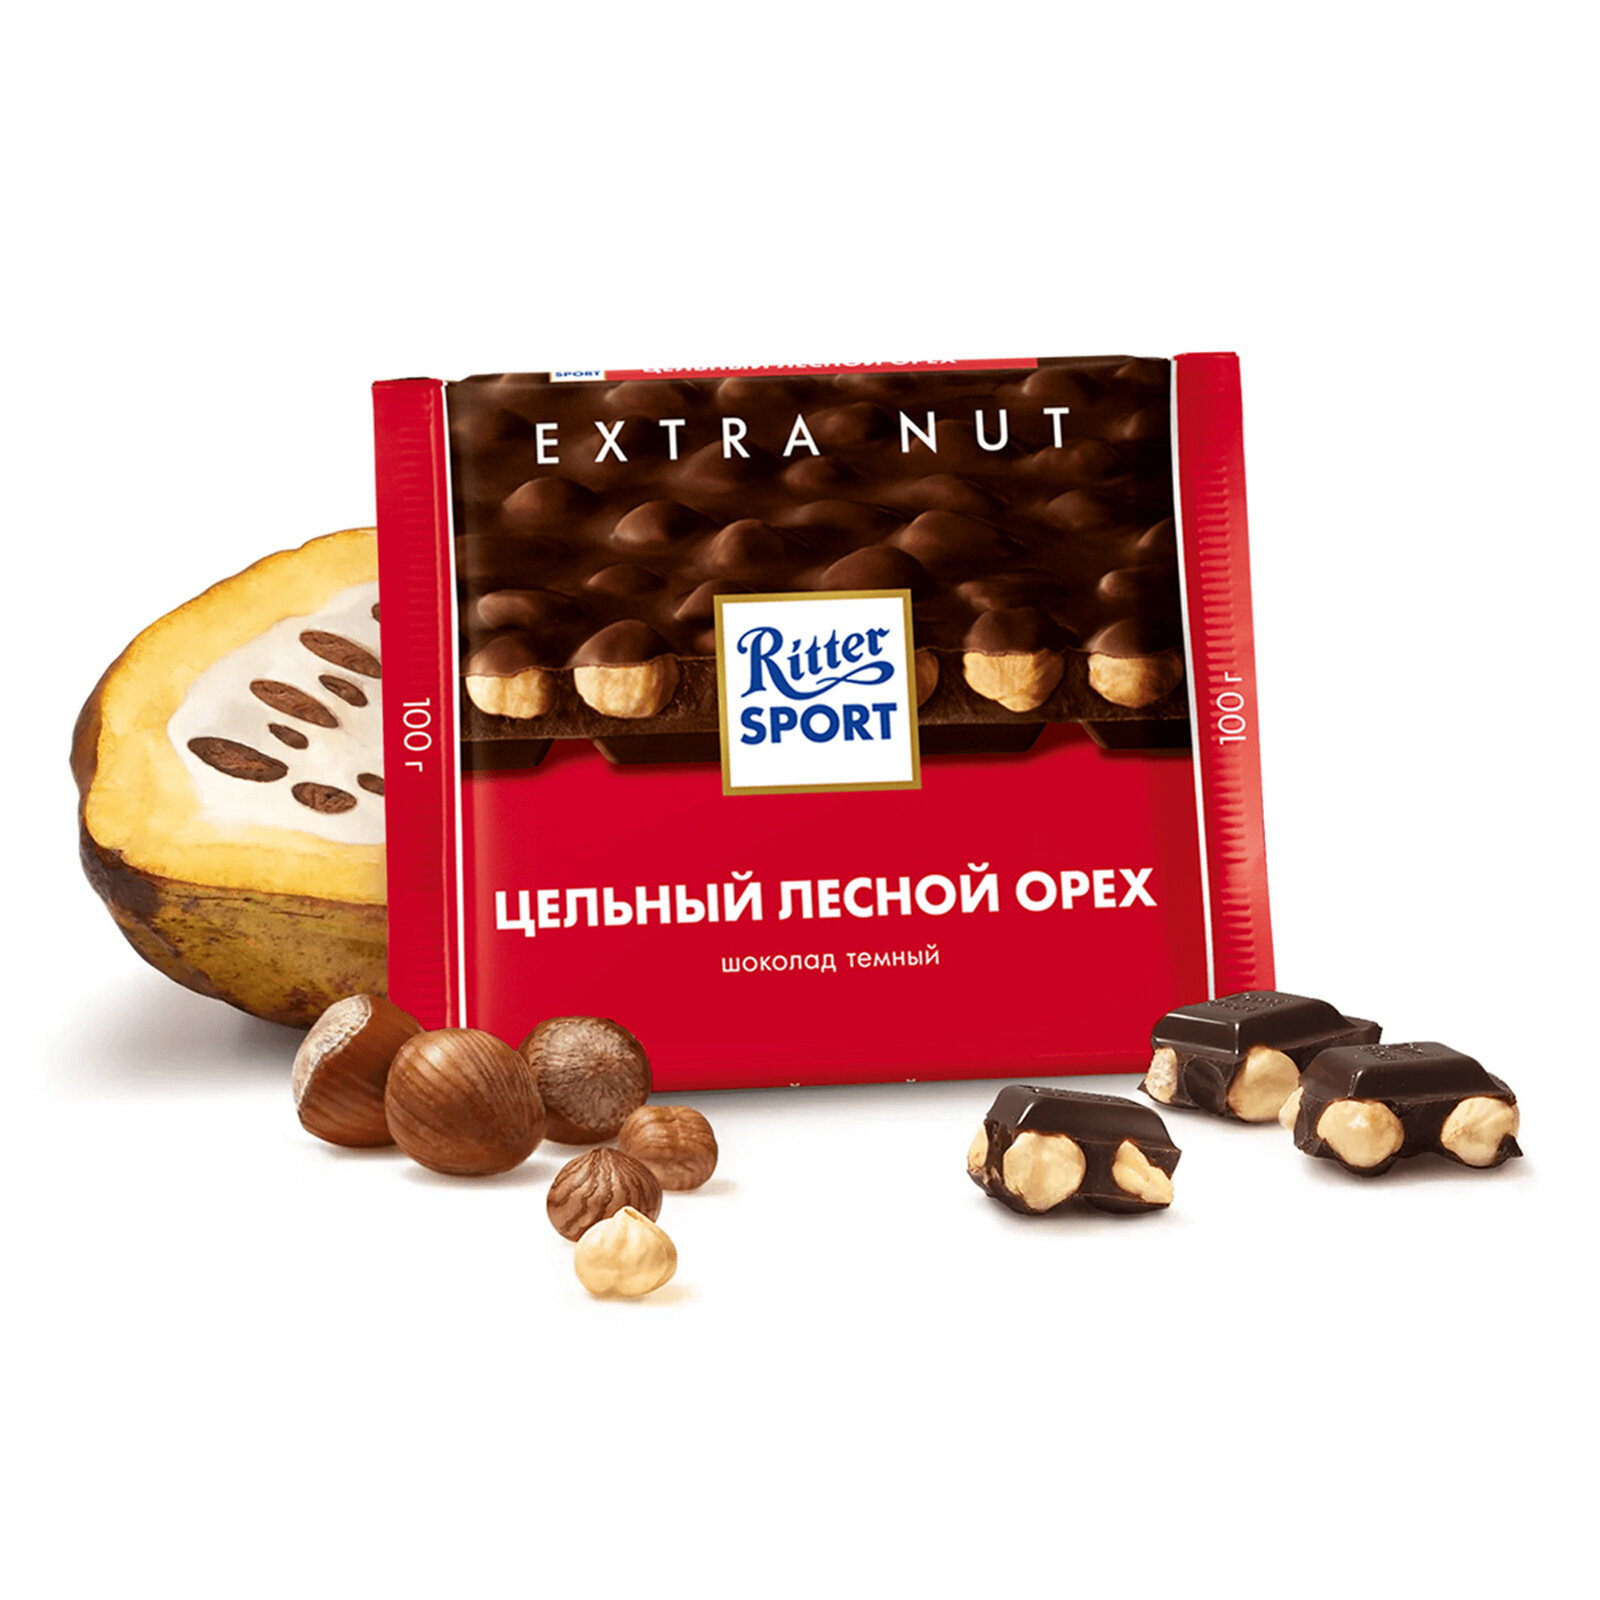 Шоколад темный Ritter Sport Extra Nut, 10 штук по 100г.